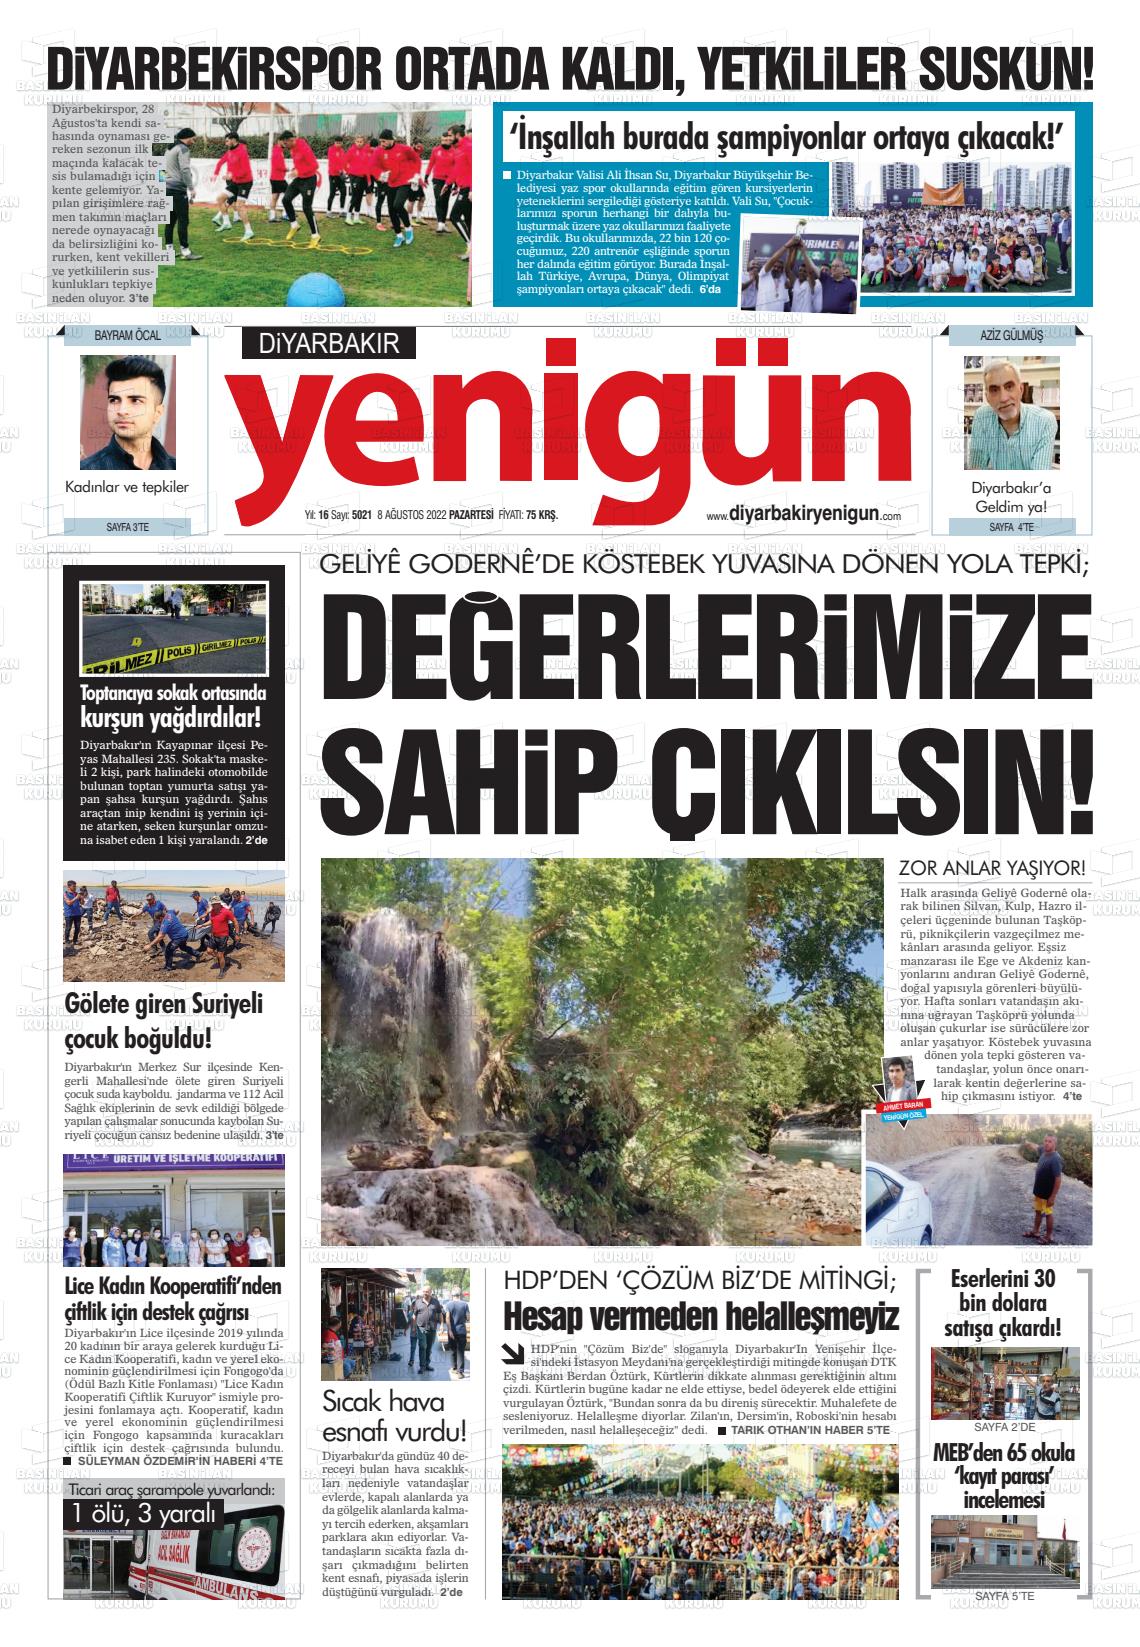 08 Ağustos 2022 Diyarbakır Yenigün Gazete Manşeti